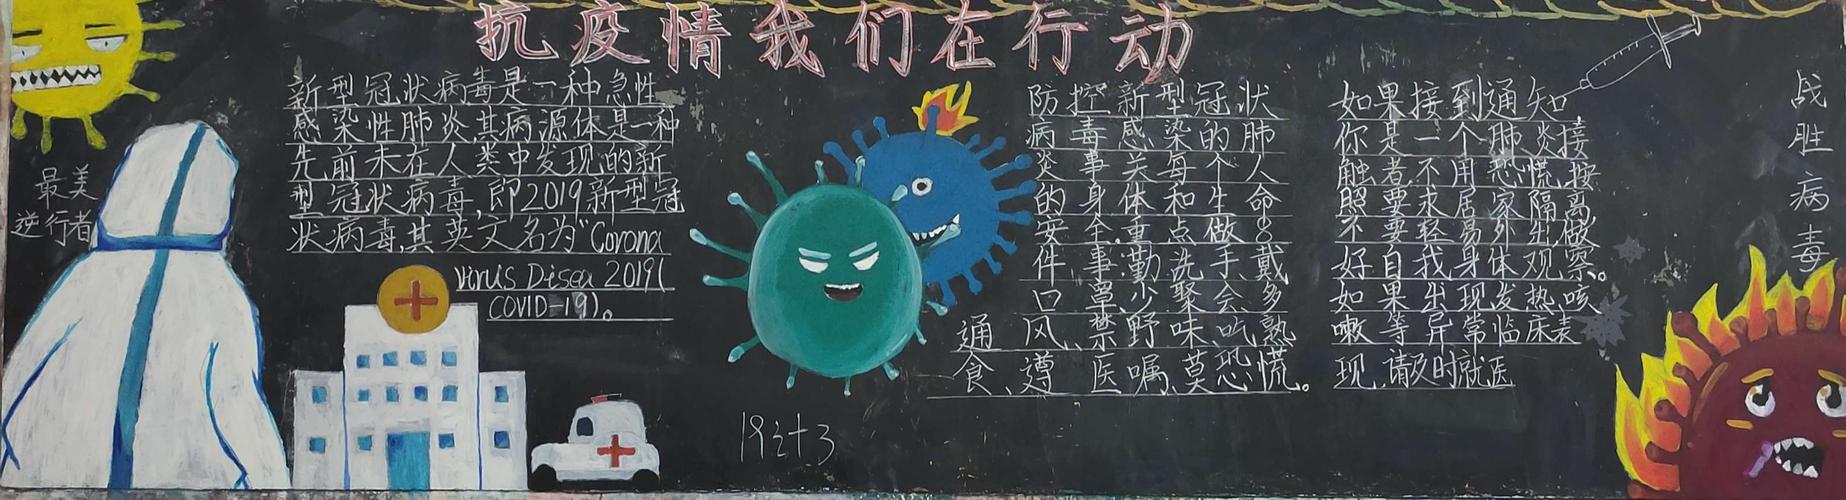 崇州市职教中心抗击疫情我们在行动黑板报评比活动